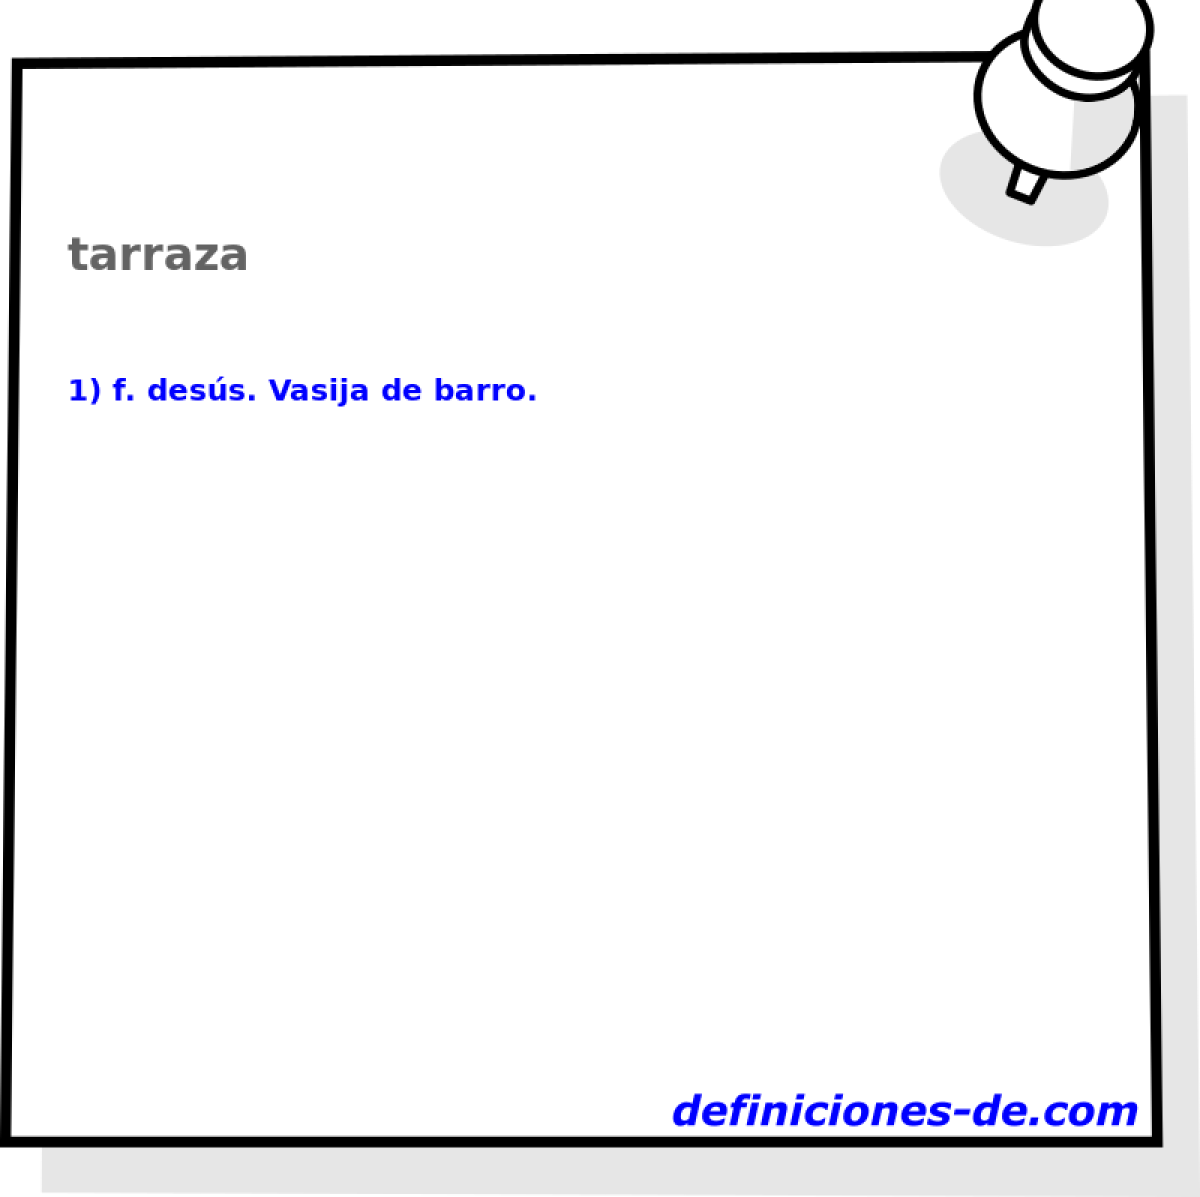 tarraza 